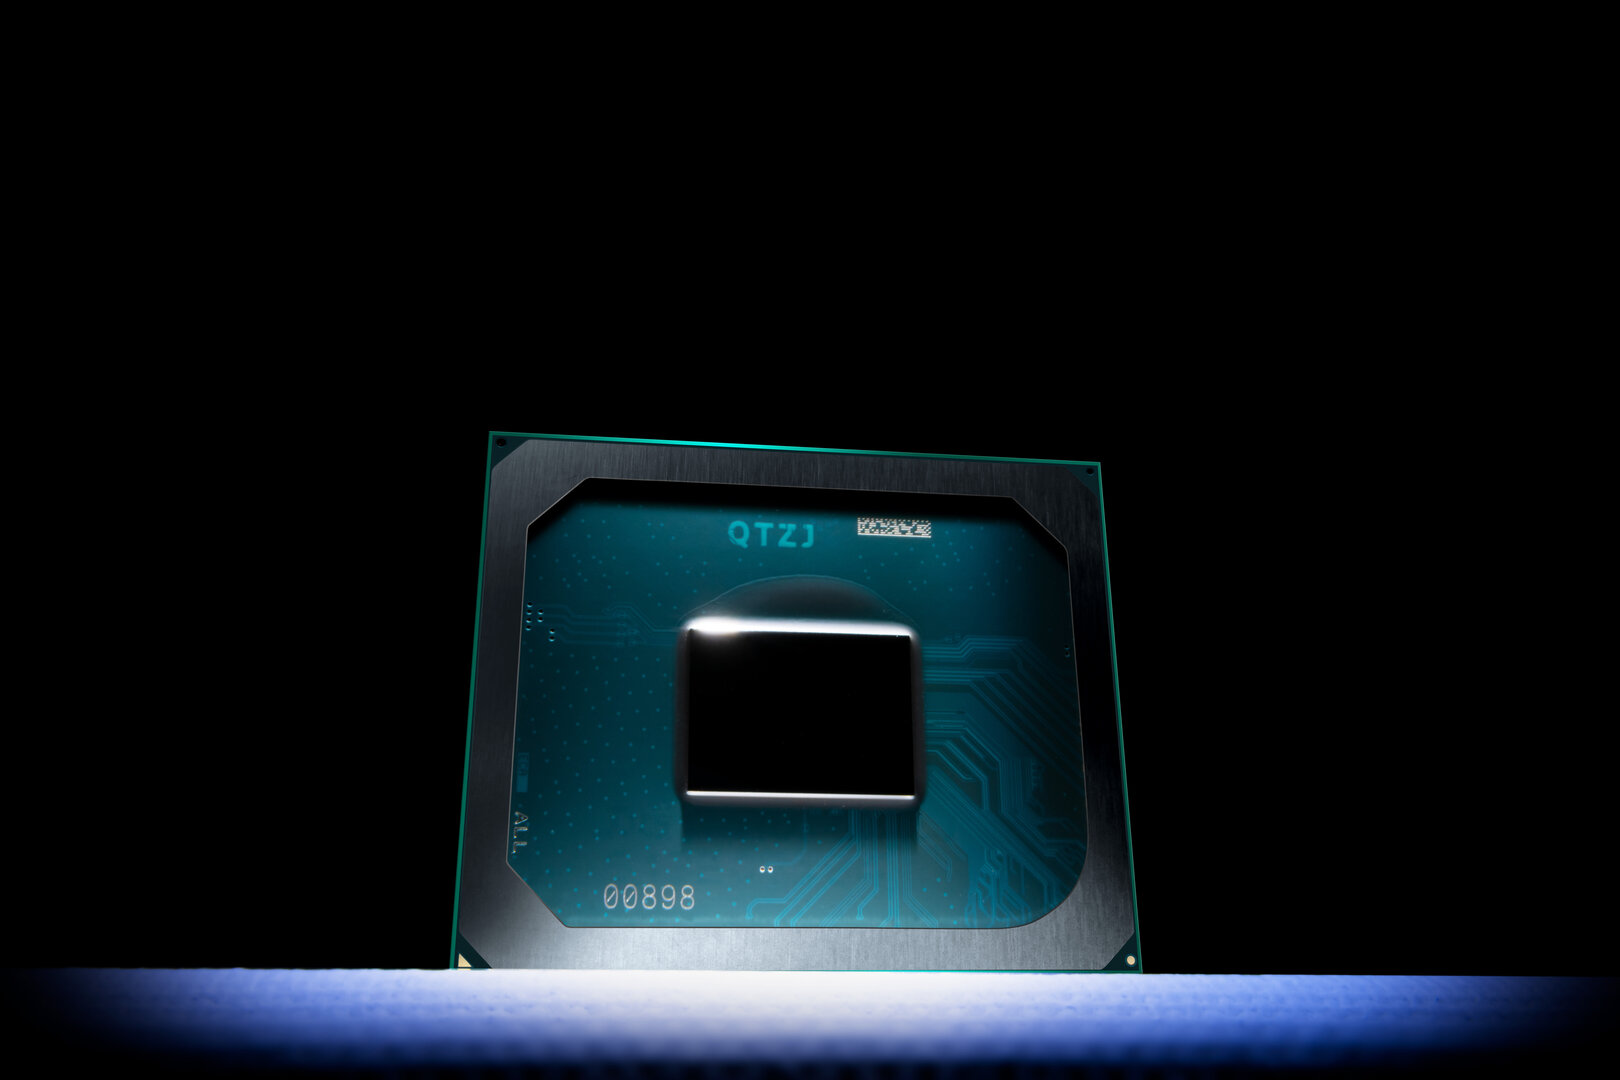 Intel DG1